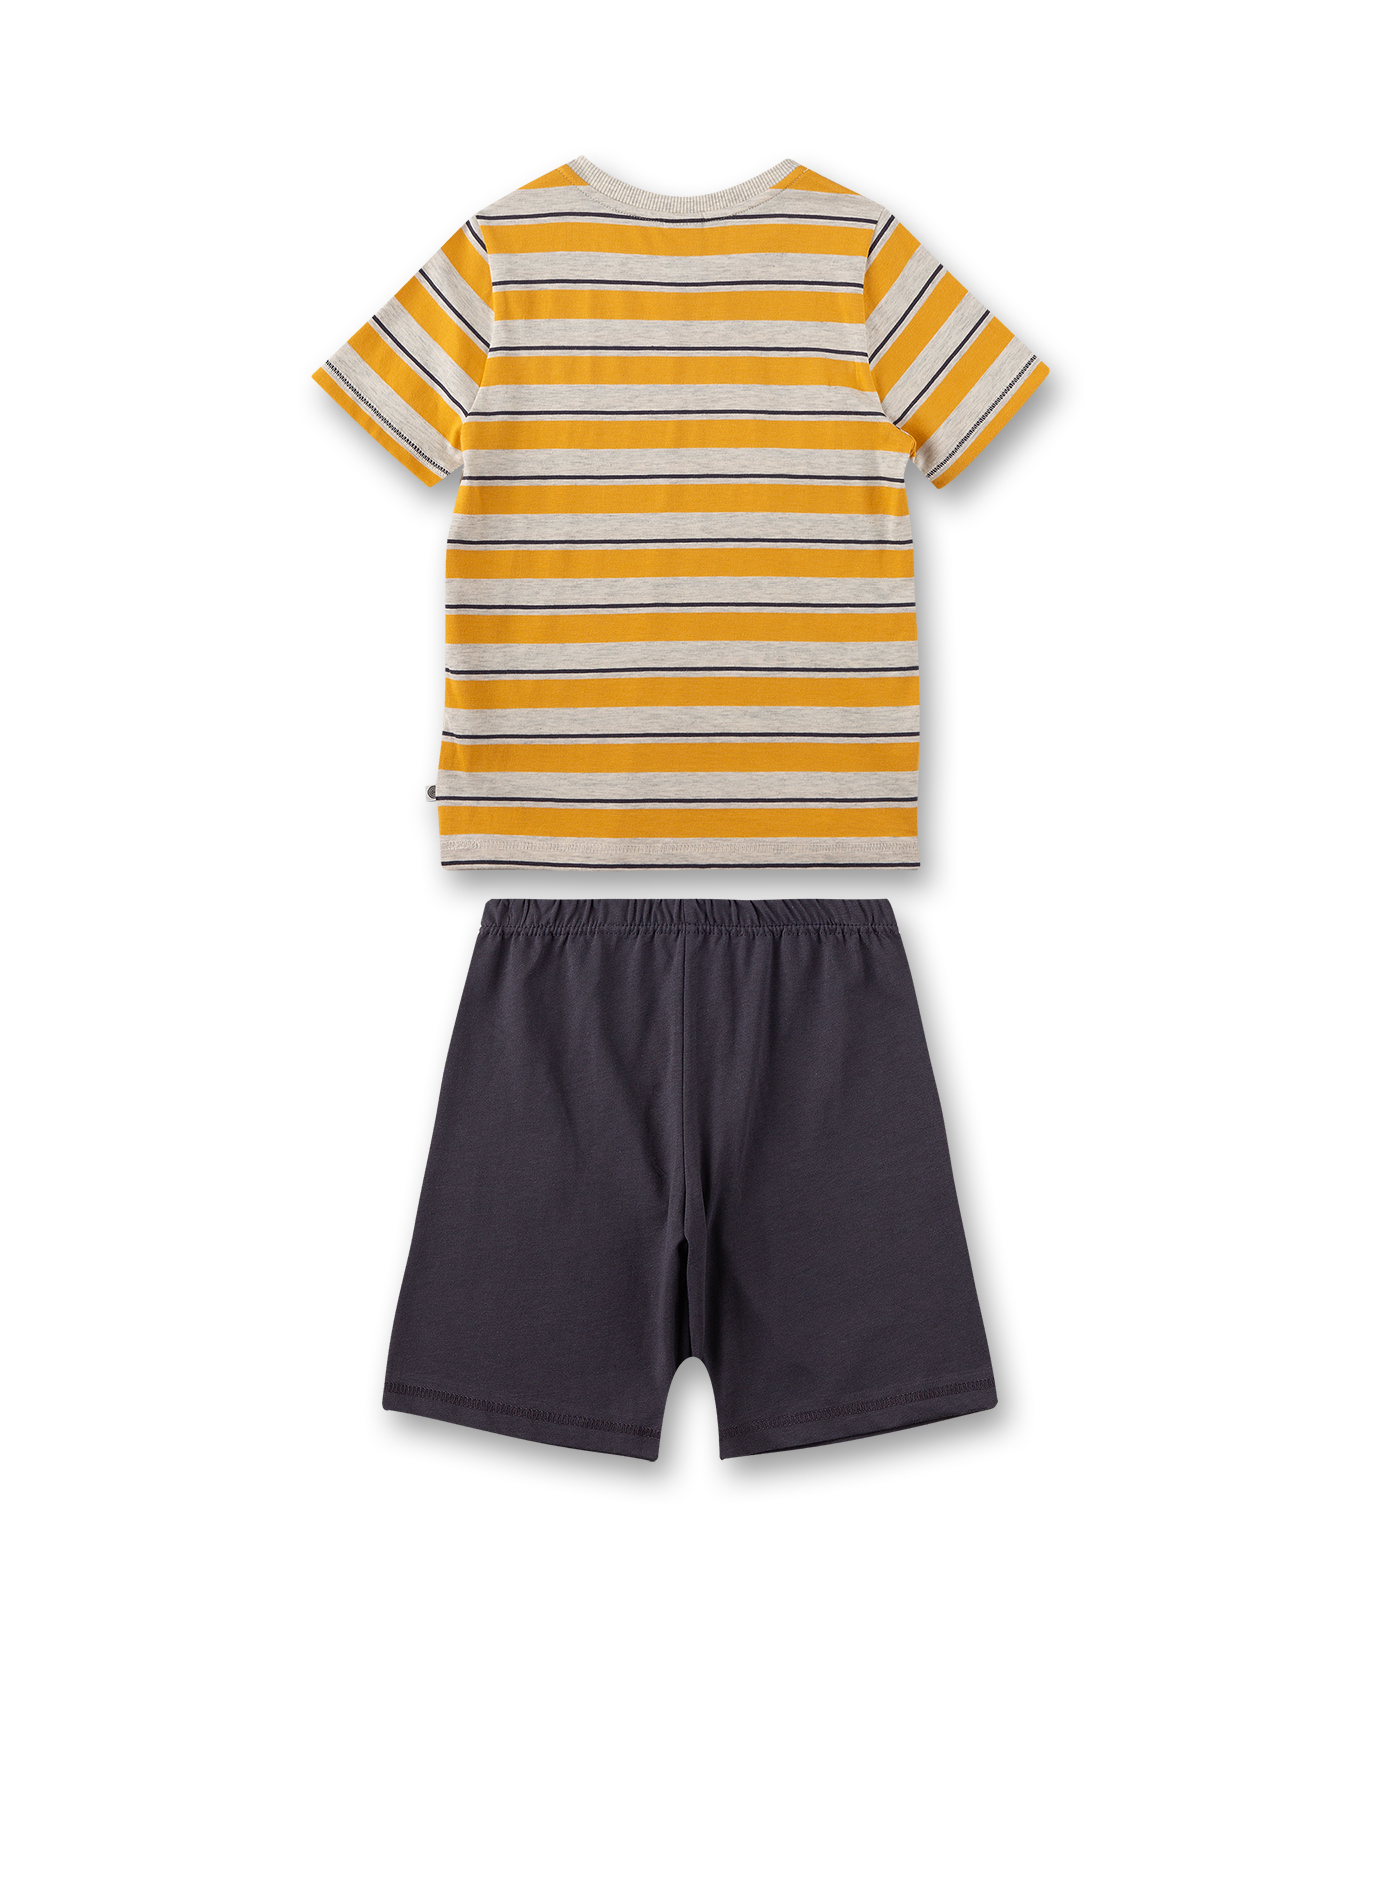 Jungen-Schlafanzug kurz Gelb